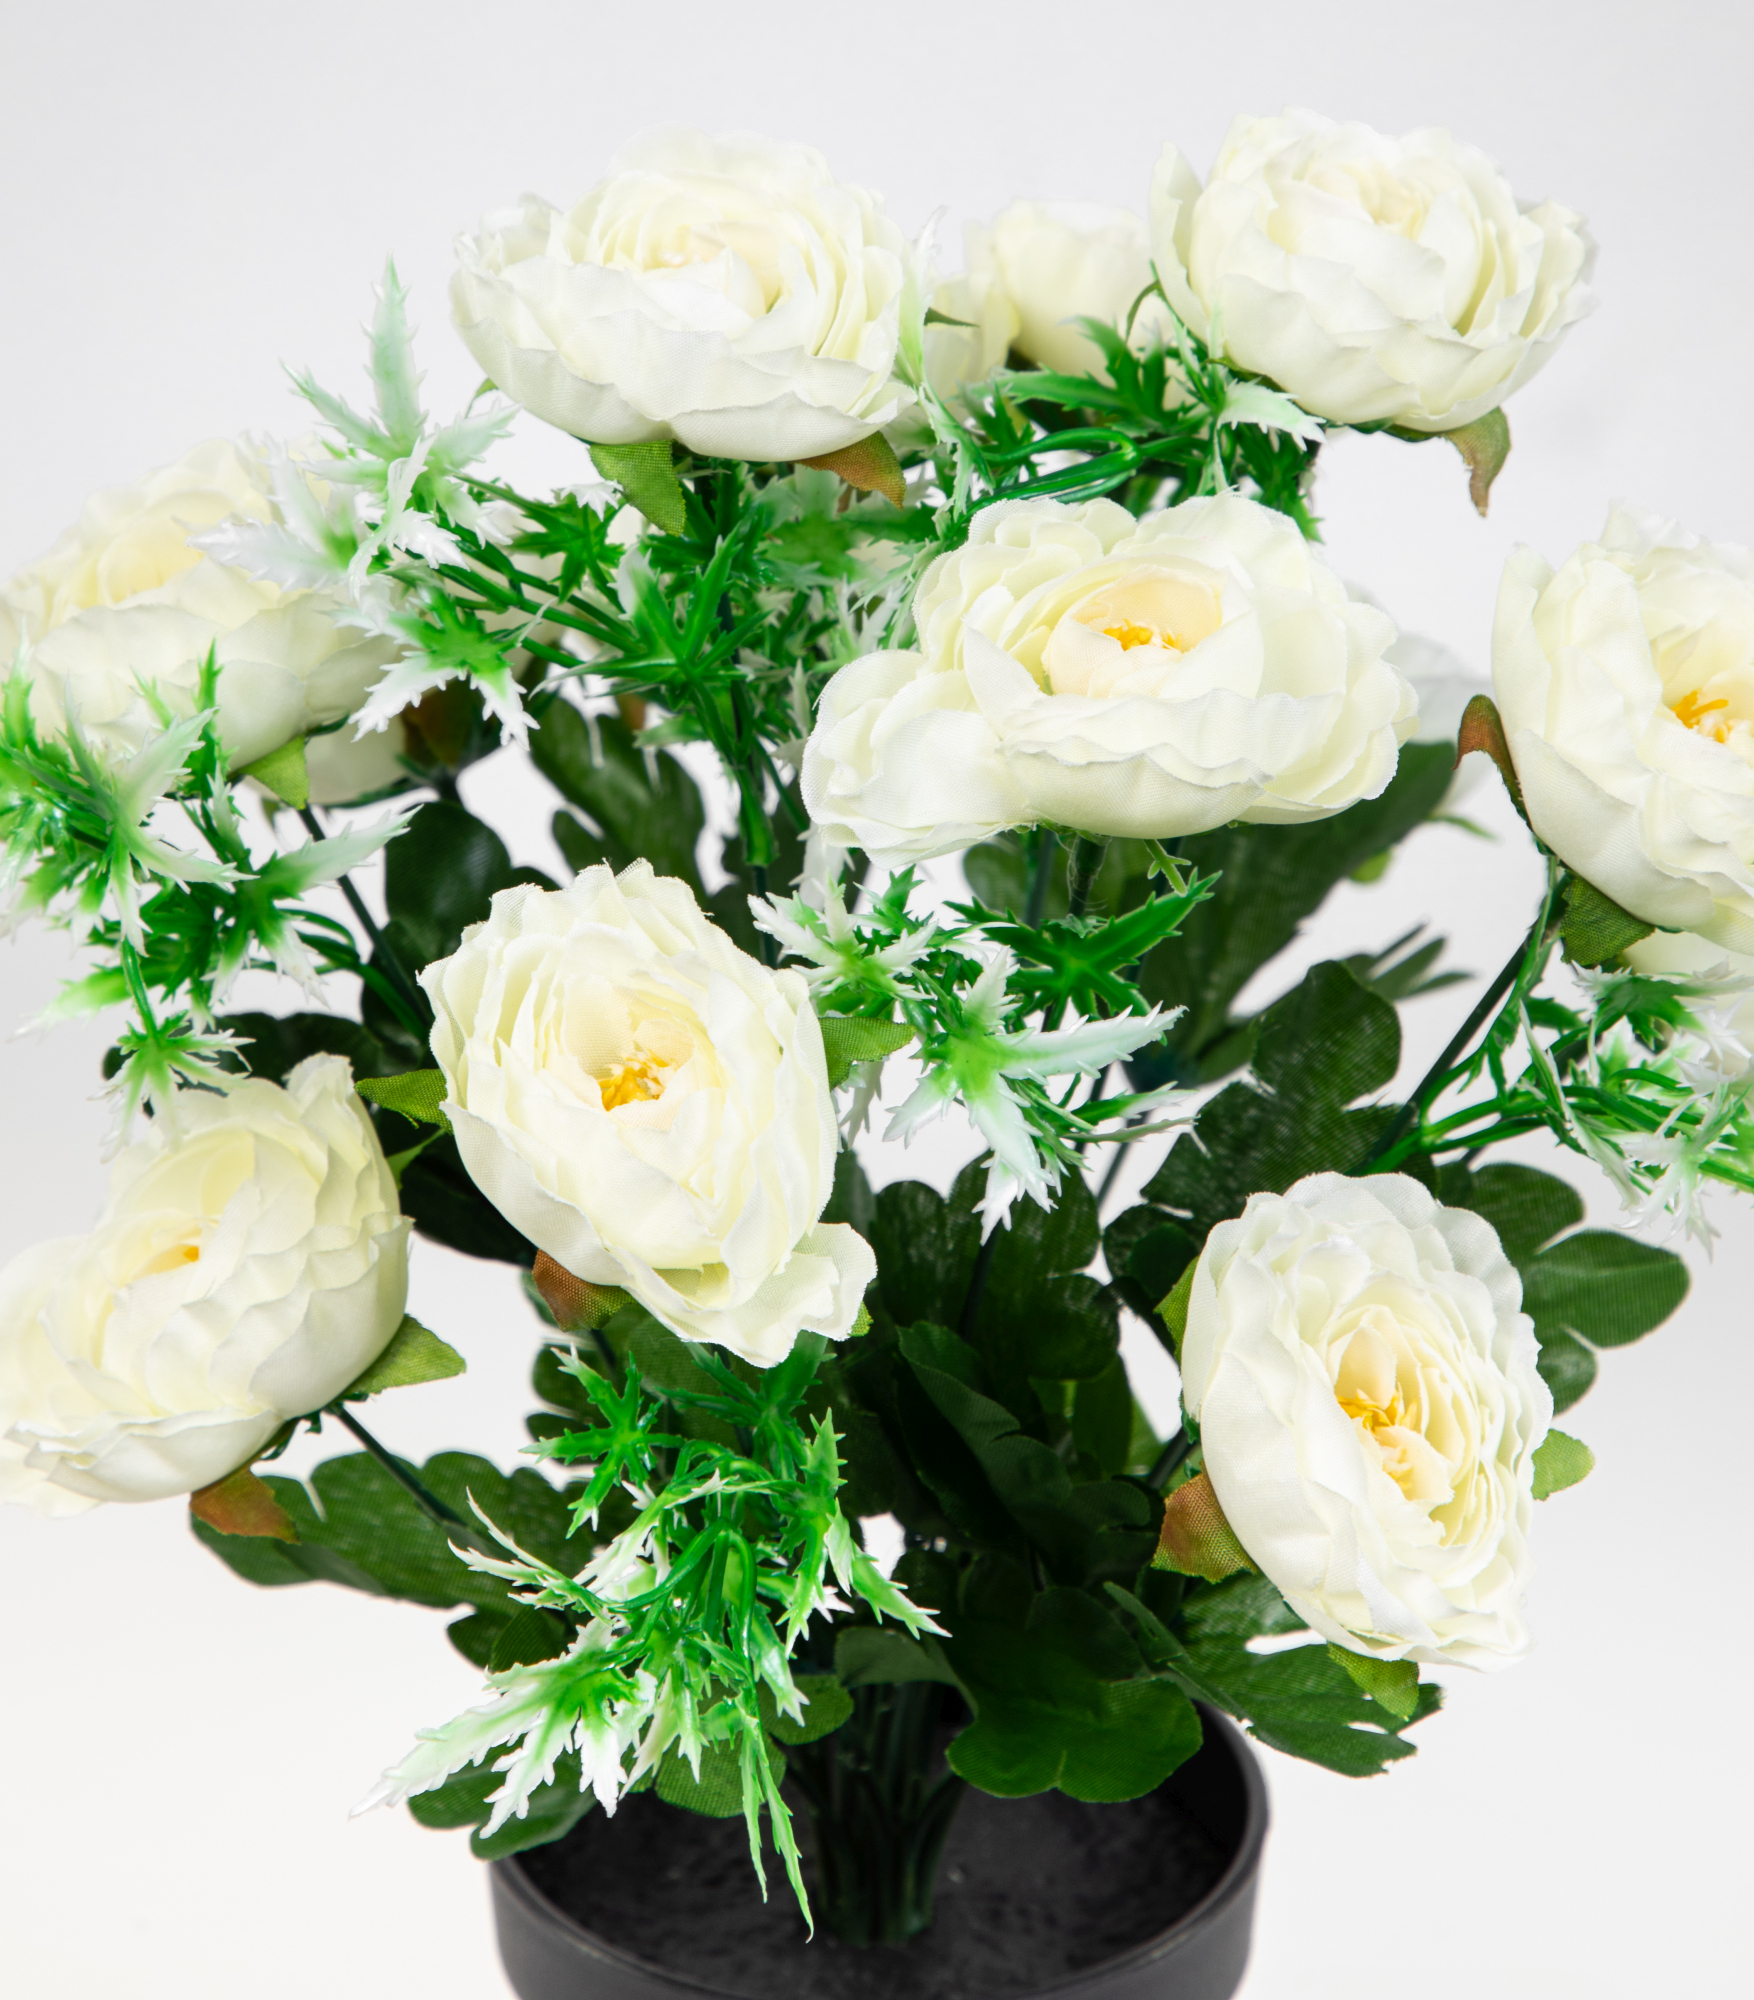 Ranunkelbusch 34cm weiß im Kunstblumen Ranunkel künstliche JA Topf Kunstpflanzen Blumen